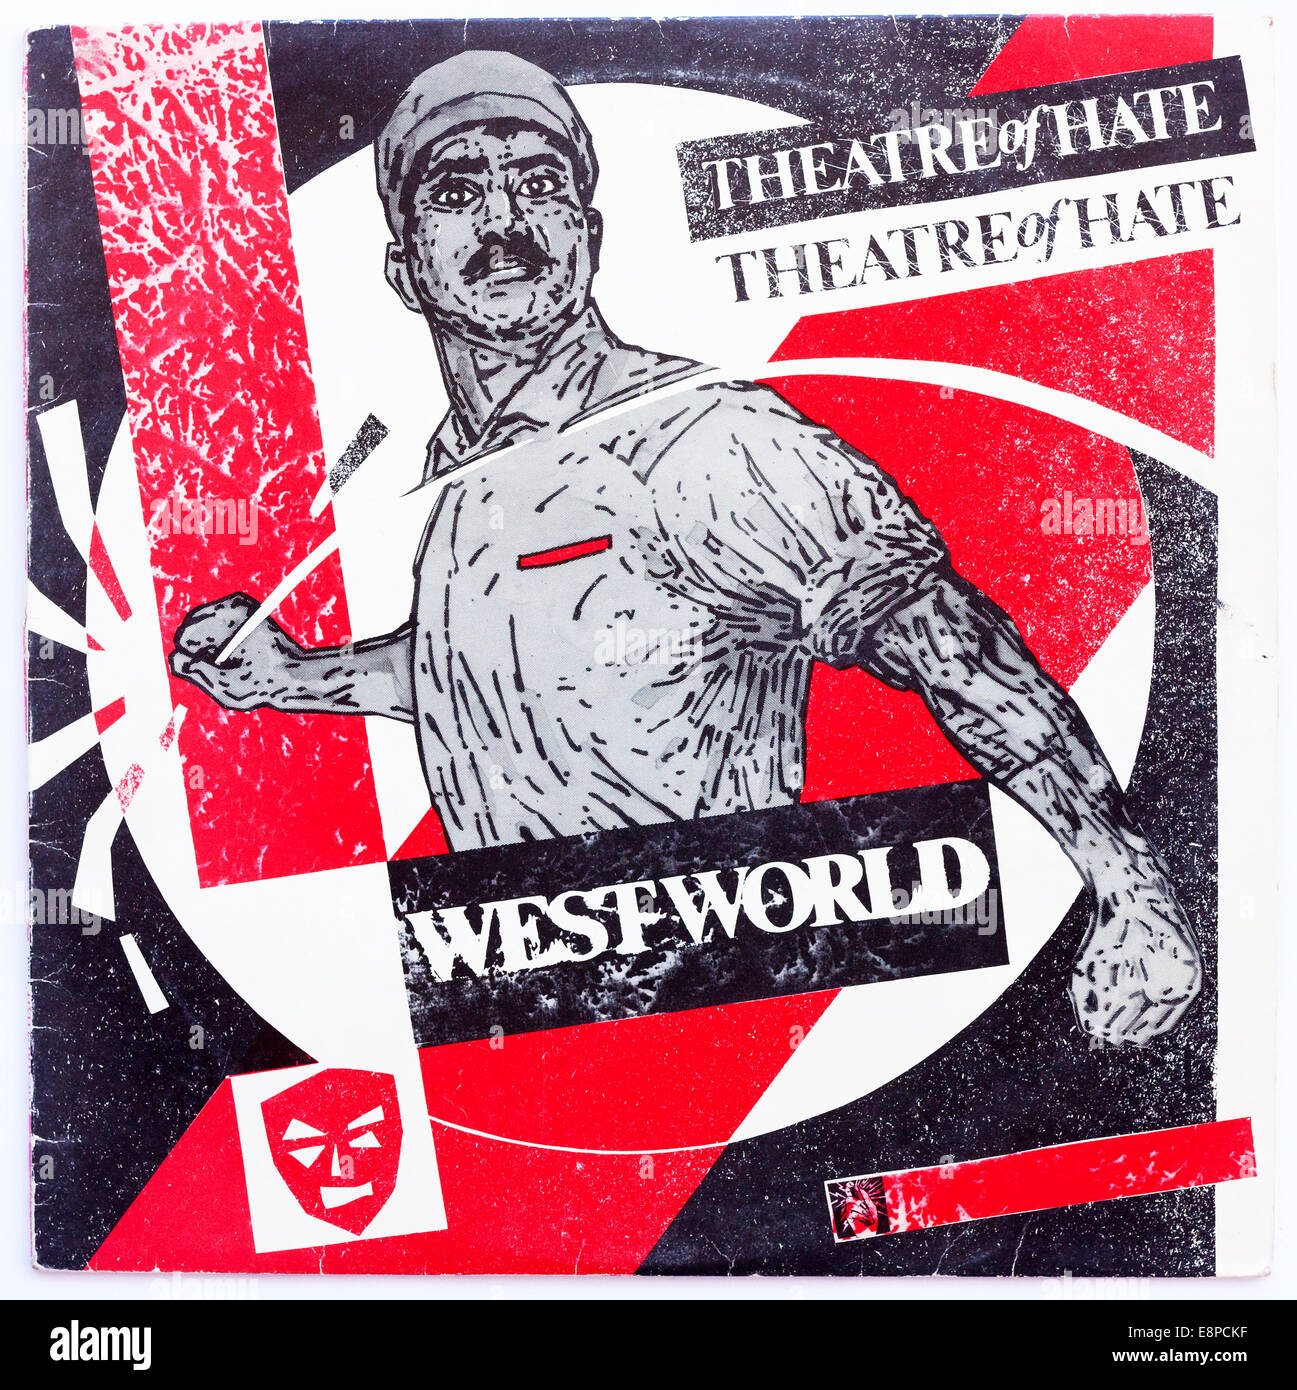 Cover-Art für Theater of Hate - Westworld, 1982 Vinyl-Album auf Burning Rome Records - nur zur redaktionellen Verwendung Stockfoto